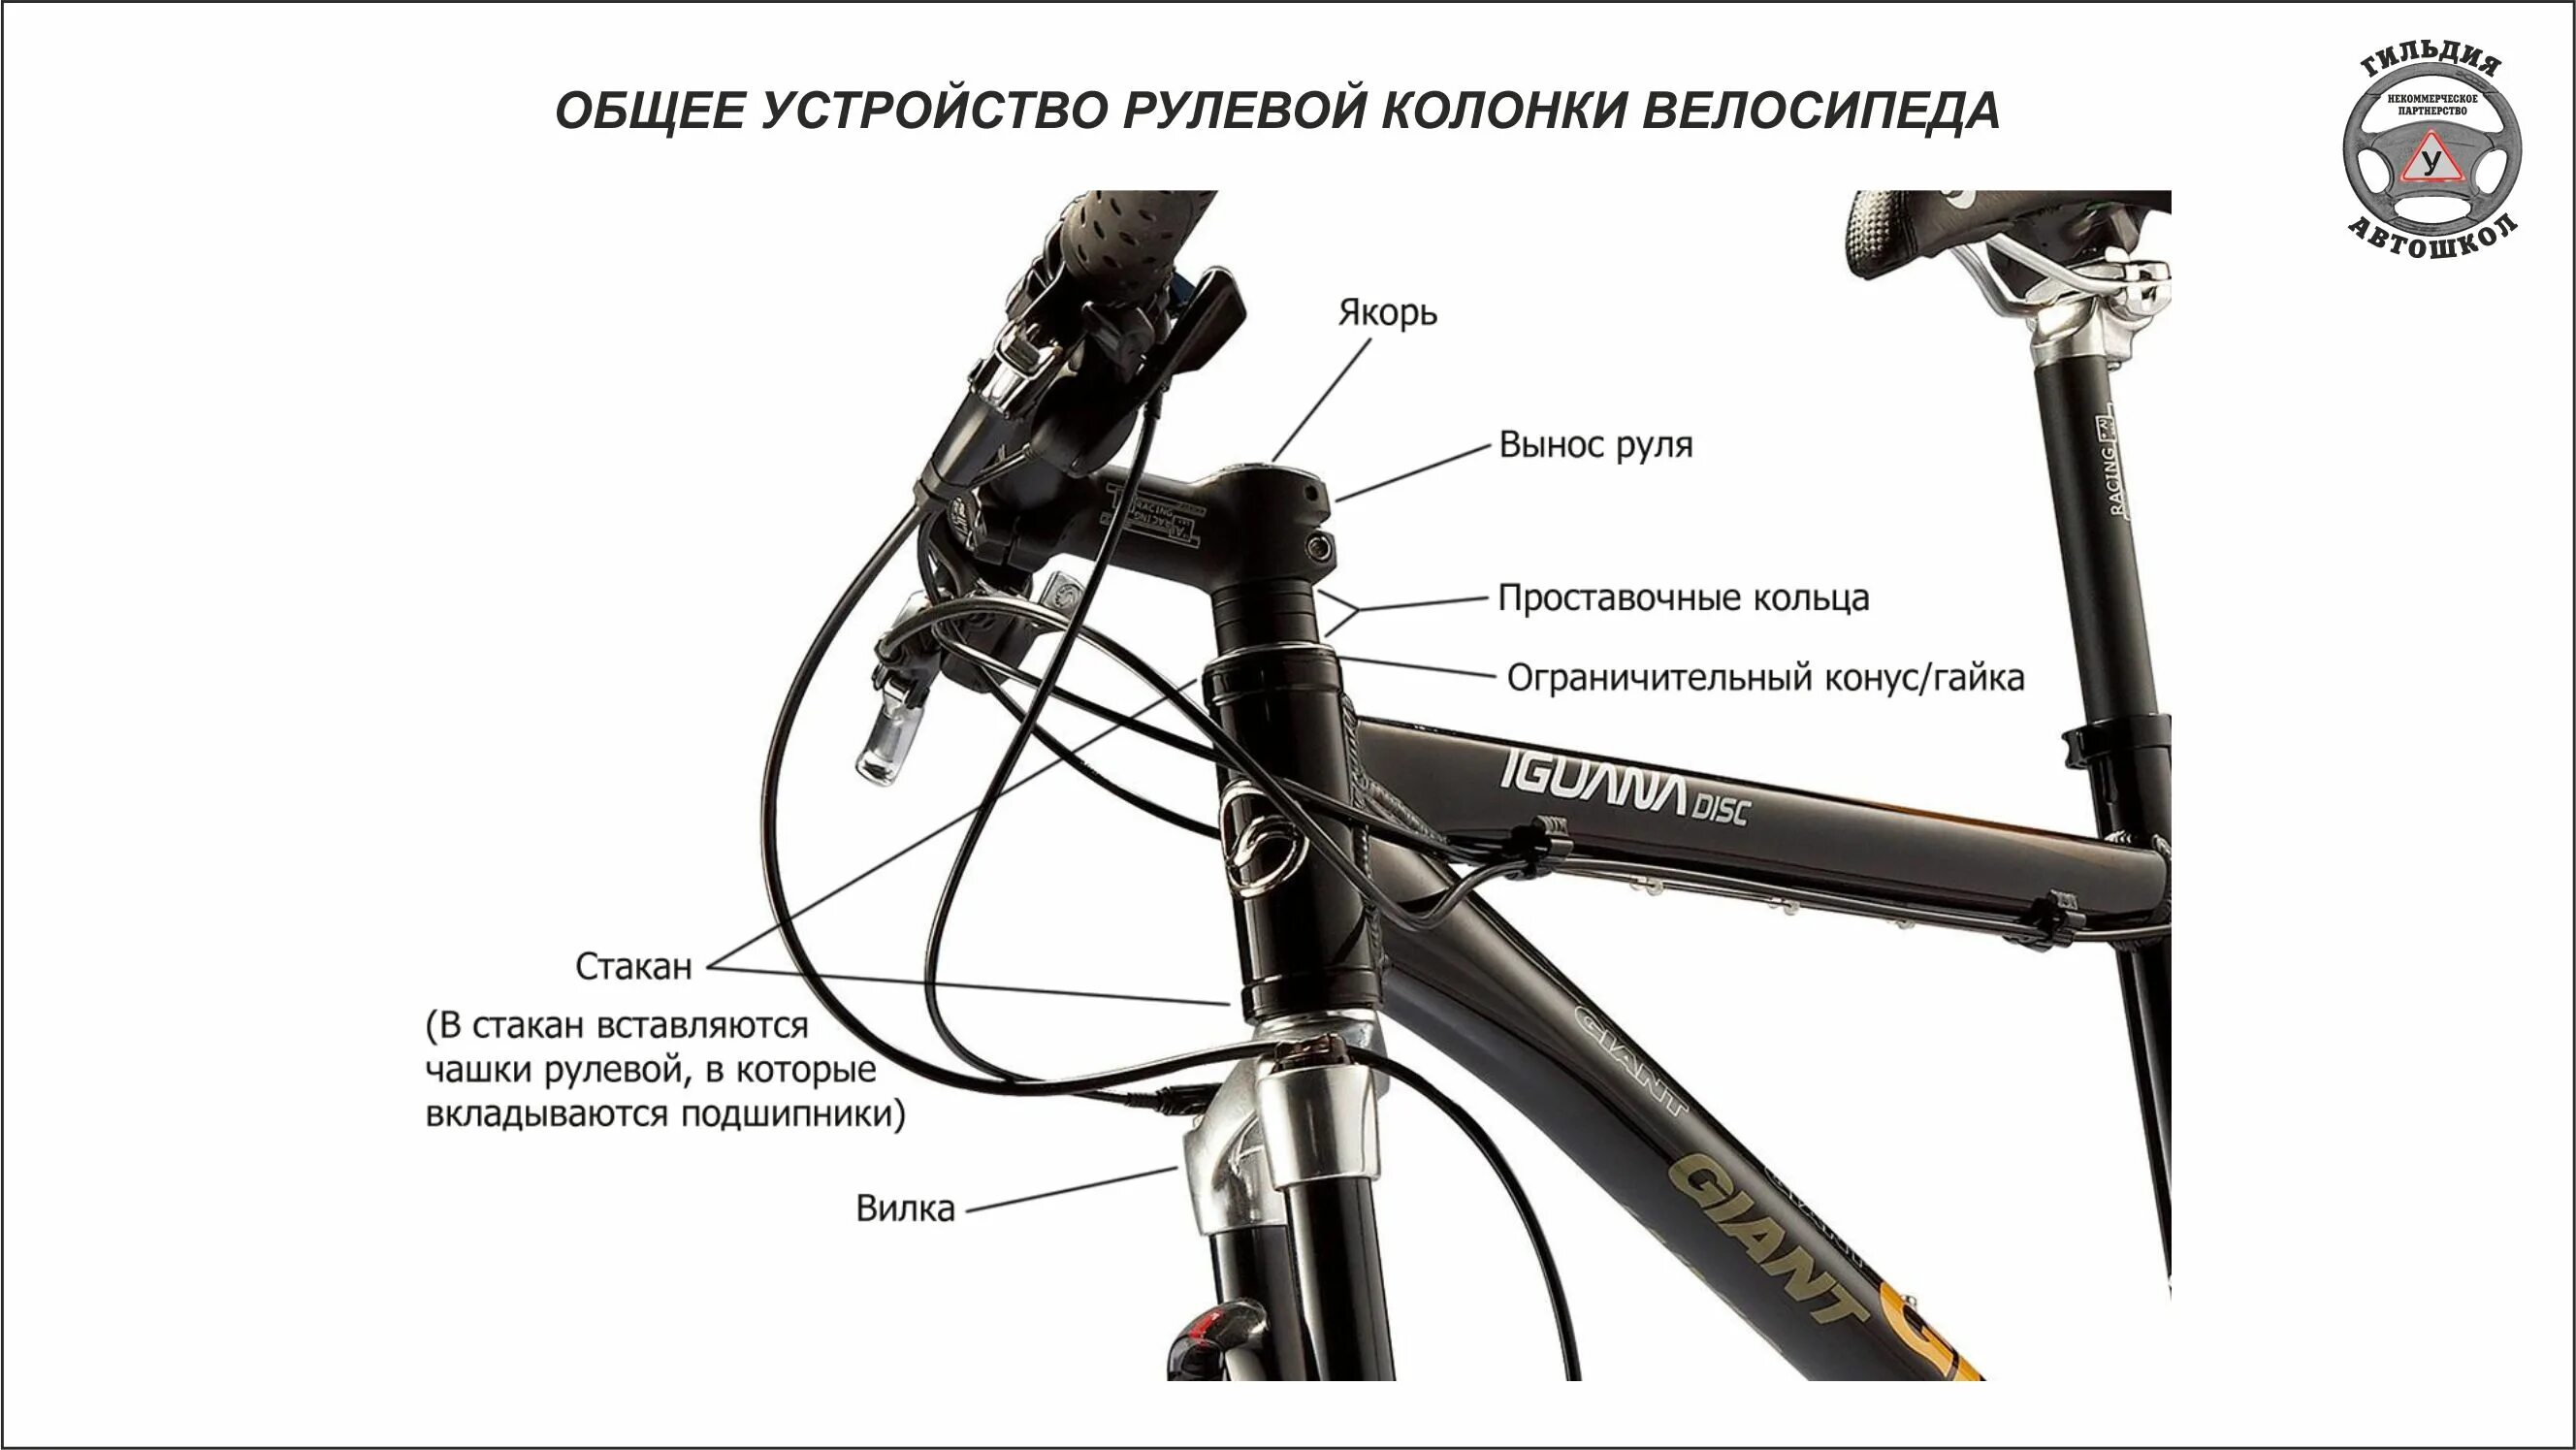 Конструкция рулевой колонки велосипеда стелс 950md. Рулевая колонка велосипеда стелс. Рулевая колонка велосипеда стелс навигатор. Сборка руля велосипеда стелс.